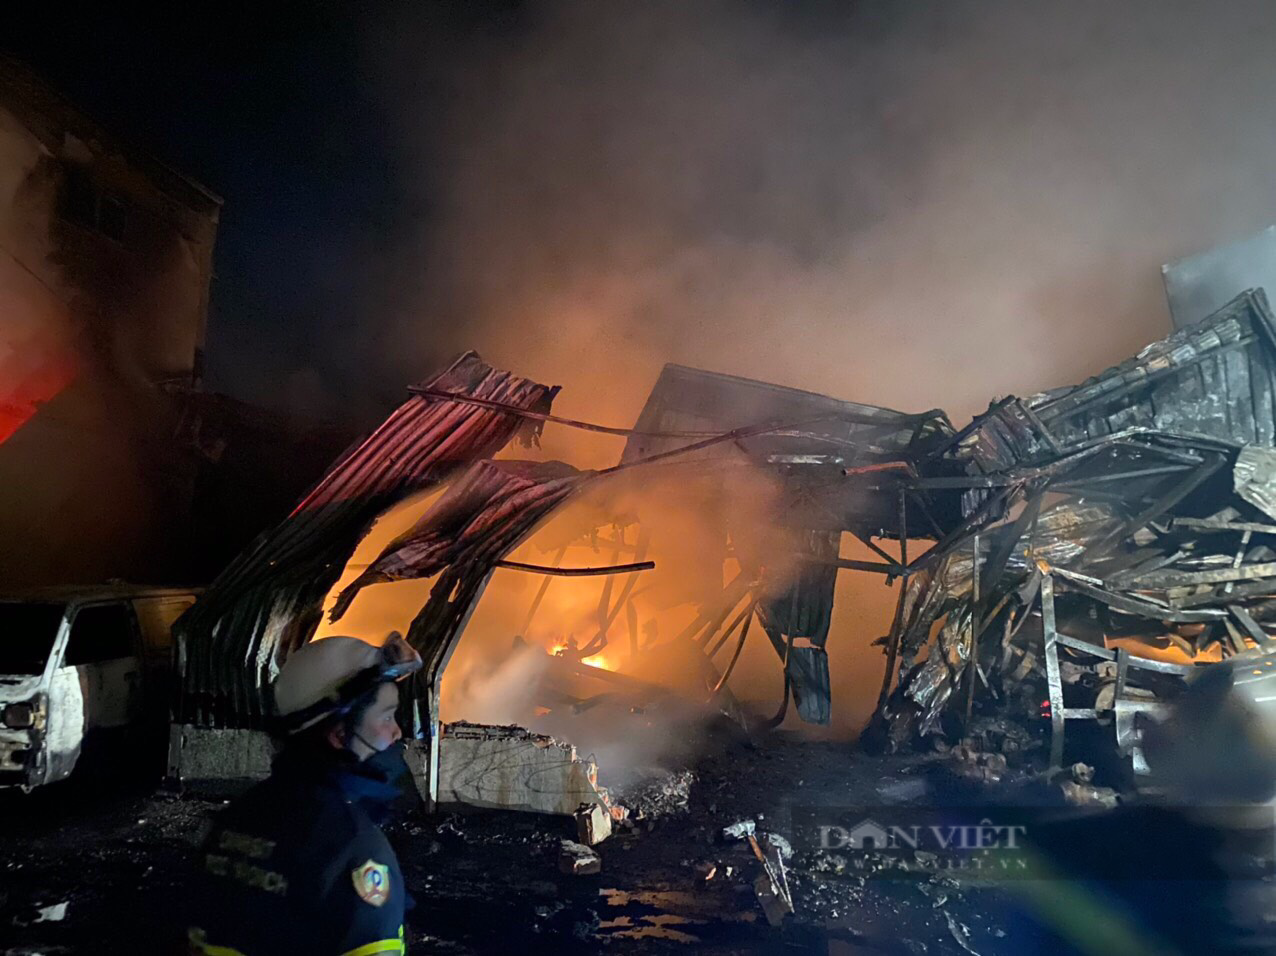 Hà Nội: Hé lộ nguyên nhân vụ cháy cực lớn ở nhà xưởng 2.000m2 trong đêm, nhiều tài sản bị thiêu rụi - Ảnh 3.